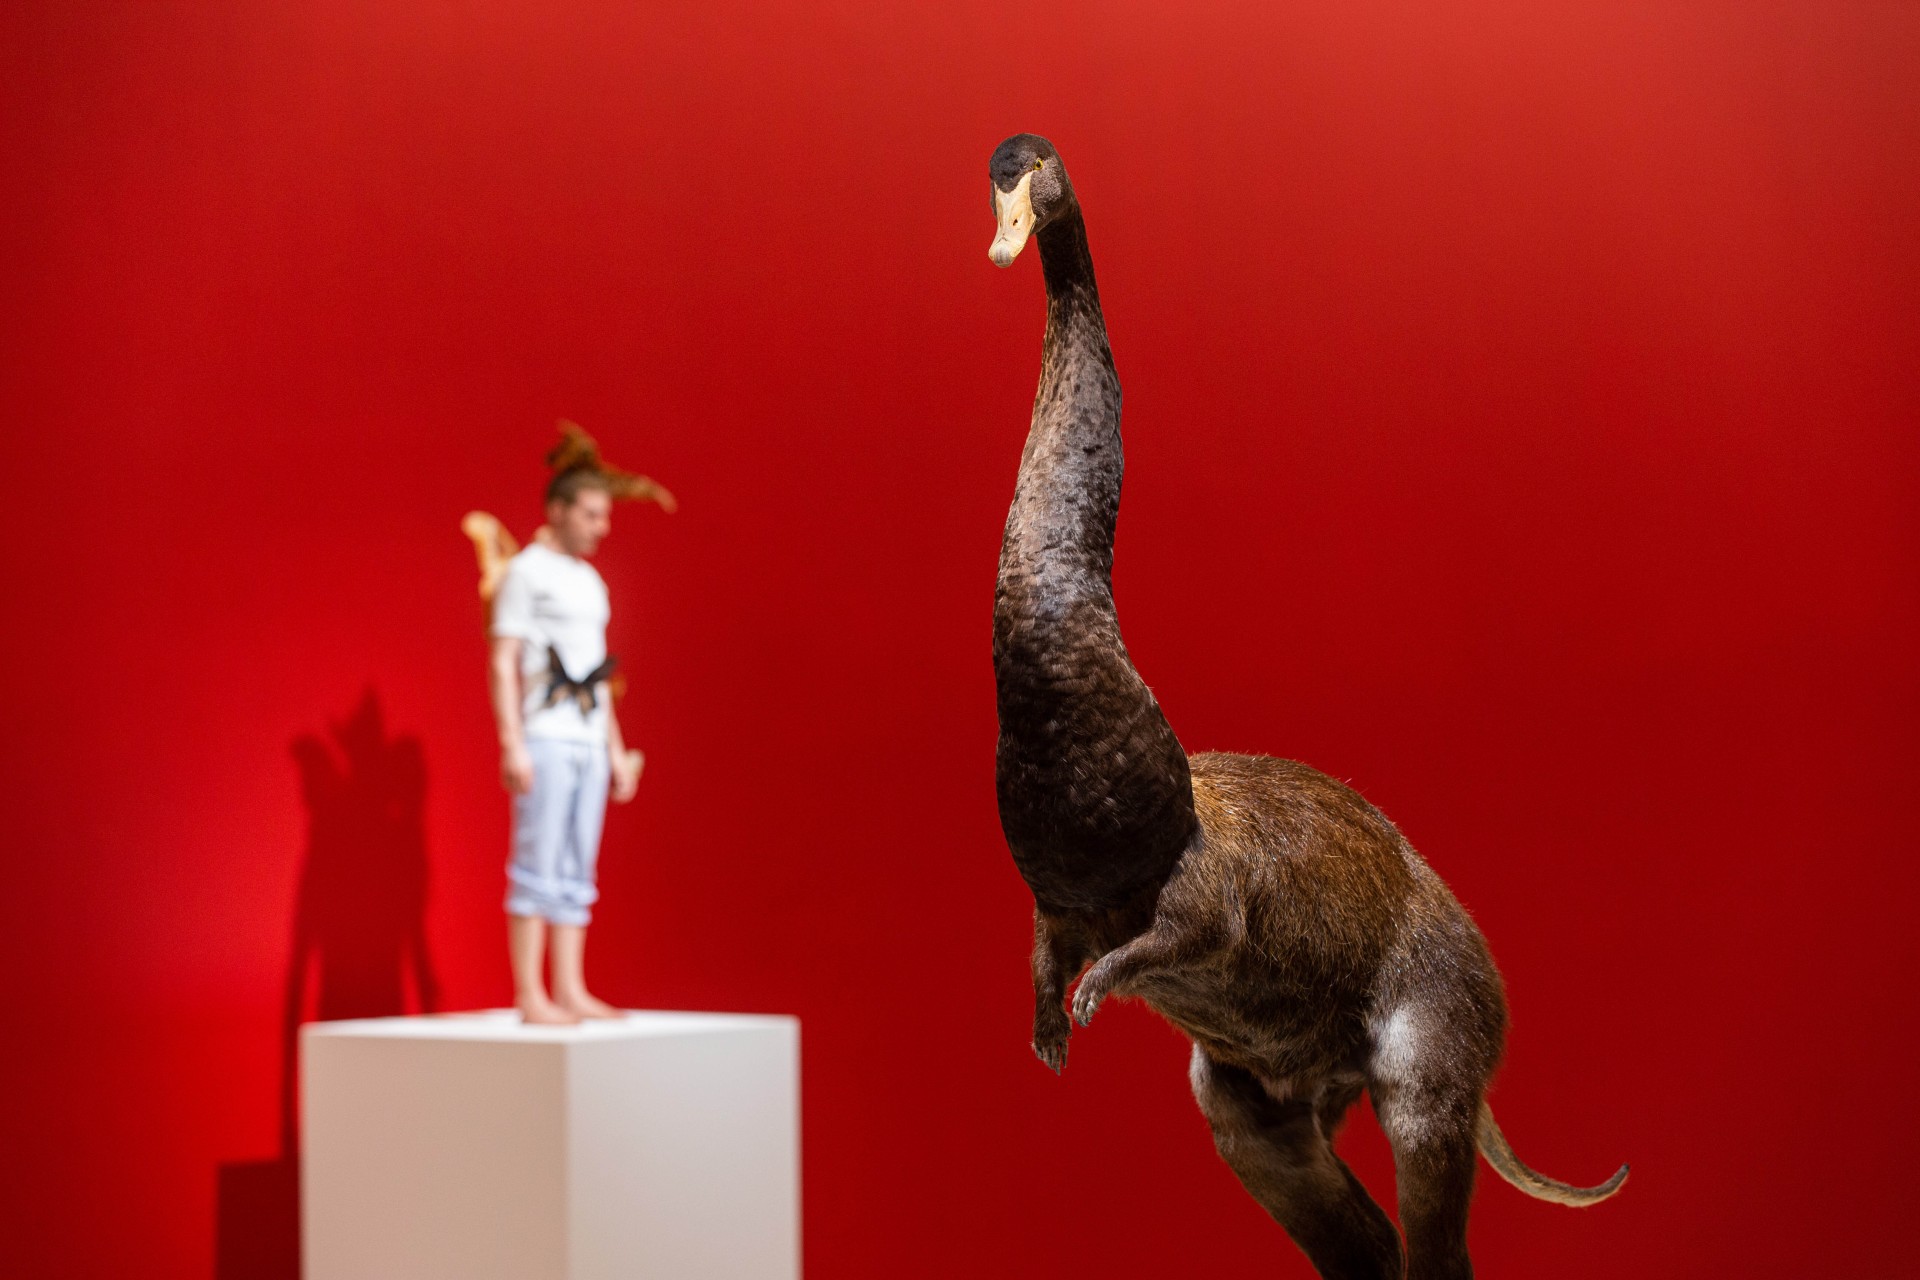 托馬斯‧格倫菲爾（Thomas Grunfeld），《錯合（天鵝／海狸鼠／驢子）》（Misfit [swan/nutria/donkey] ），動物標本，100 x 60 x 30 cm，2008。 ©Thomas Grunfeld 攝影：臺北市立美術館-圖片